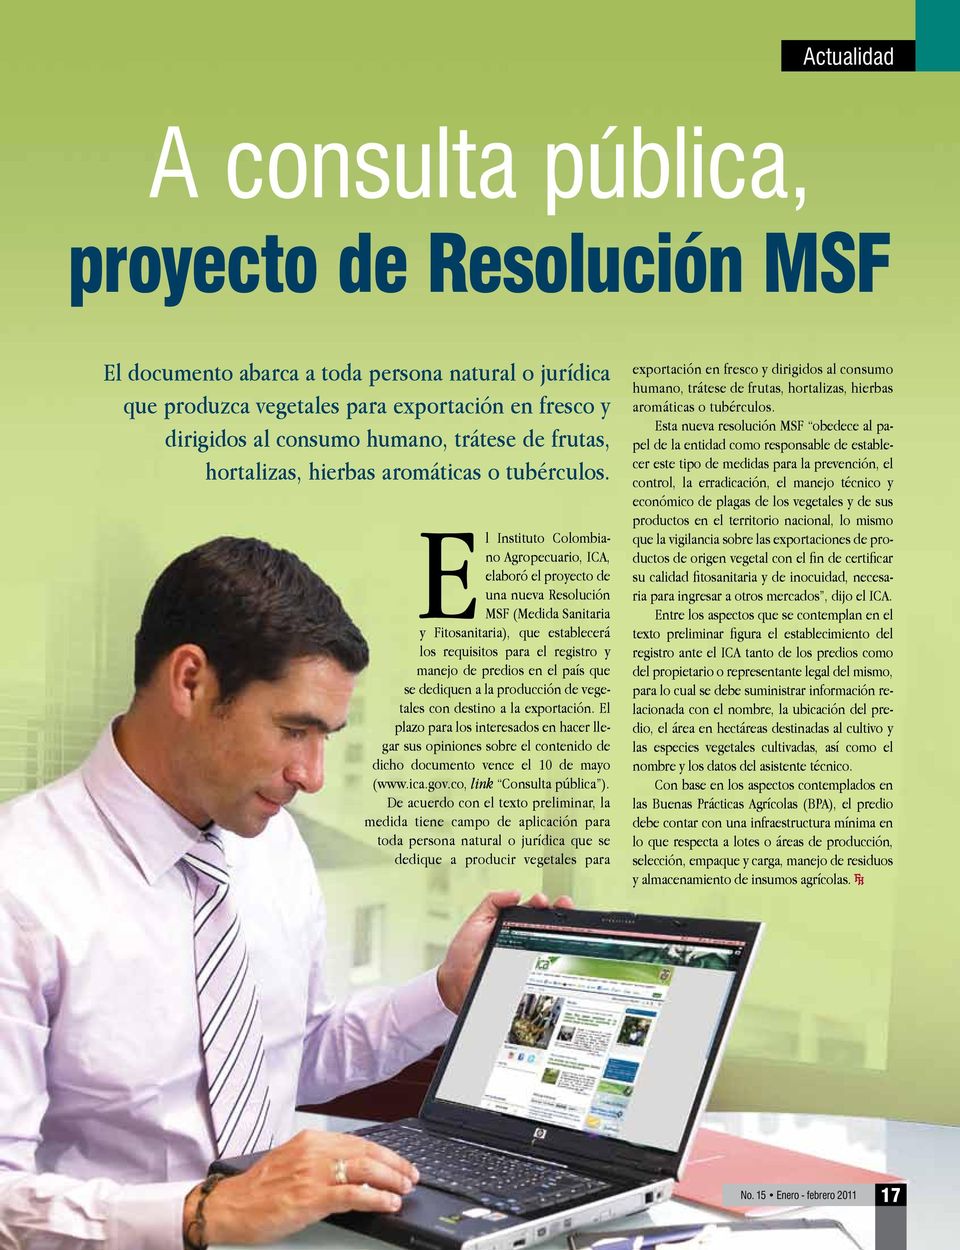 El Instituto Colombiano Agropecuario, ICA, elaboró el proyecto de una nueva Resolución MSF (Medida Sanitaria y Fitosanitaria), que establecerá los requisitos para el registro y manejo de predios en